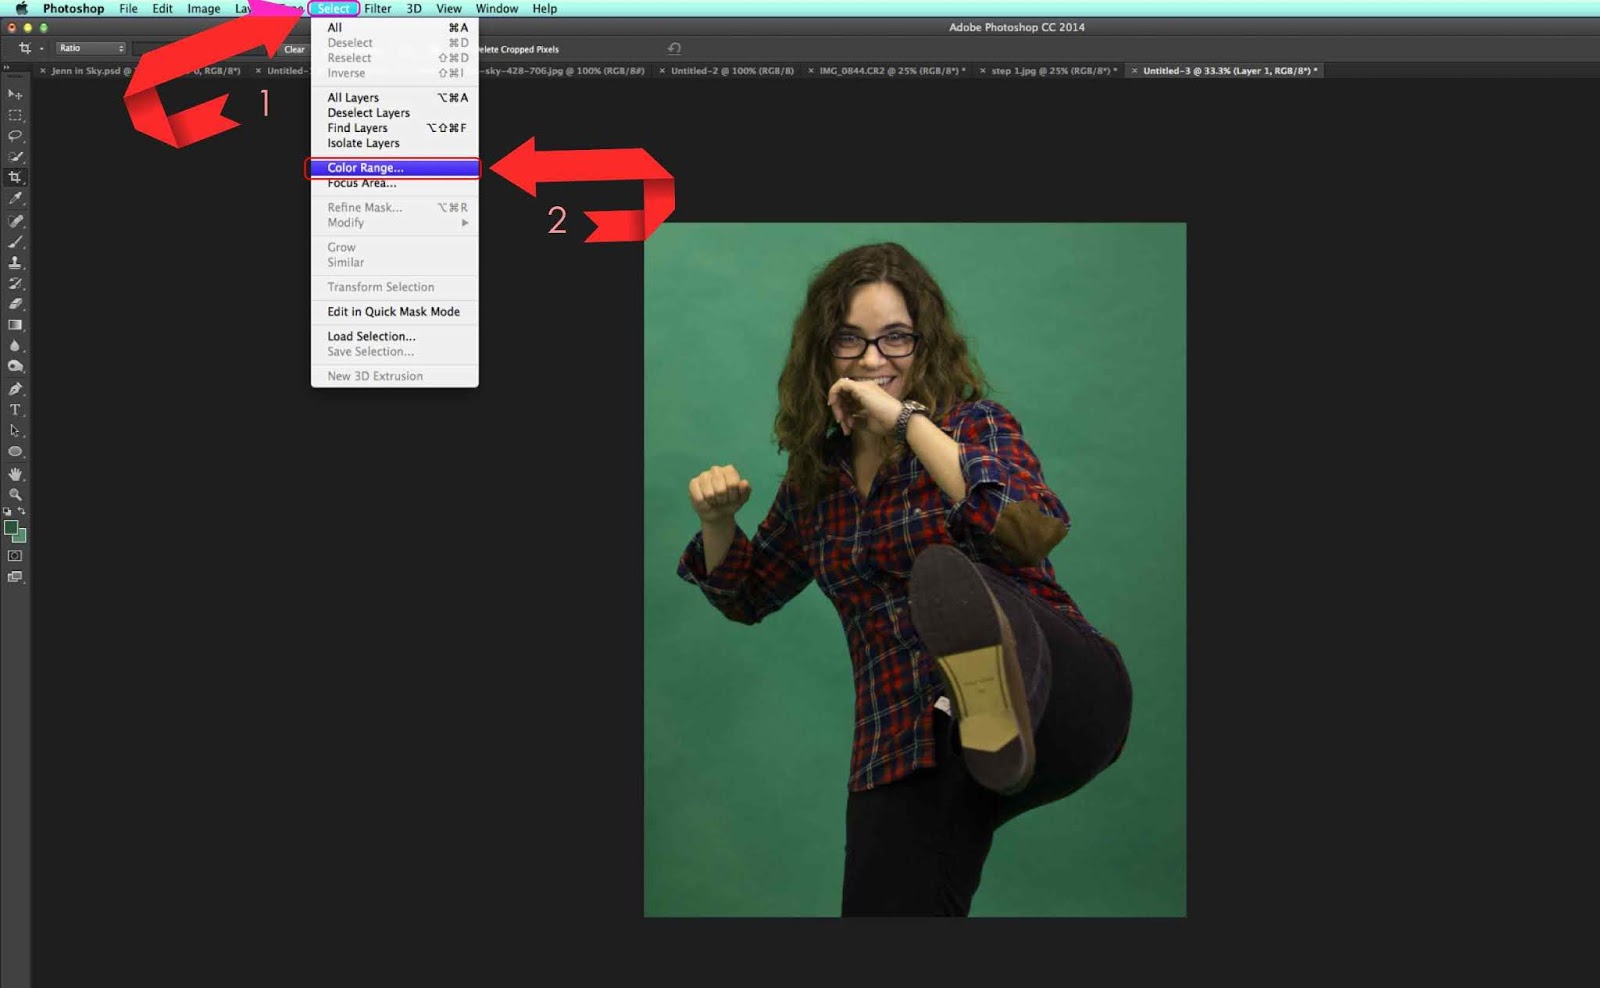 Nếu bạn là một người mới bắt đầu sử dụng Photoshop, việc loại bỏ nền xanh có thể gây khó khăn. Nhưng đừng lo, hình ảnh liên quan đã có sẵn hướng dẫn chi tiết cách loại bỏ nền xanh với Photoshop remove background green screen cho người mới bắt đầu. Hãy khám phá ảnh để cải thiện kỹ năng của bạn ngay hôm nay!